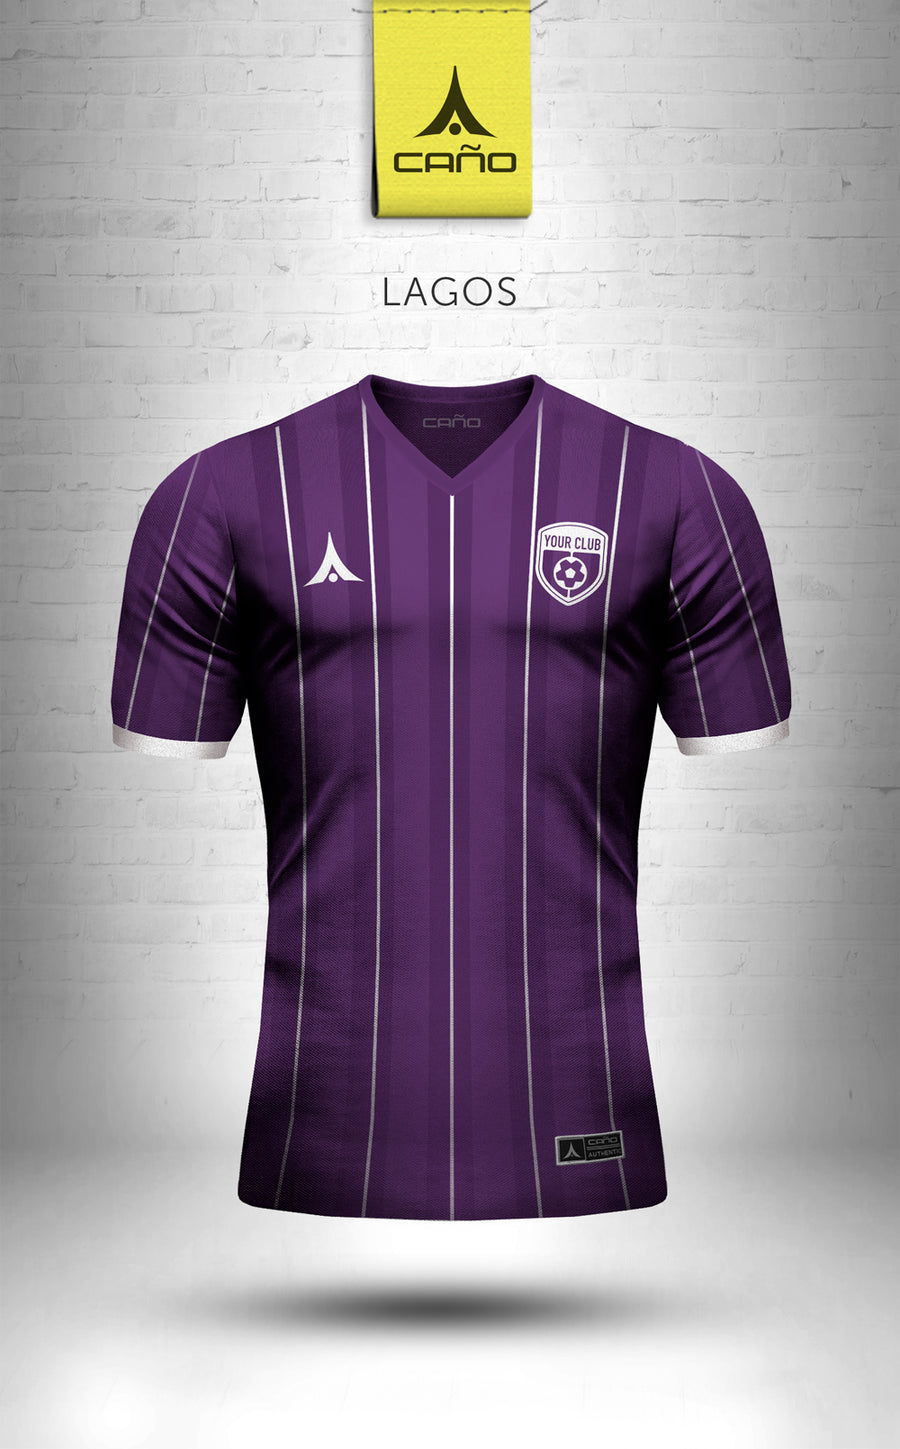 Lagos in purple/white